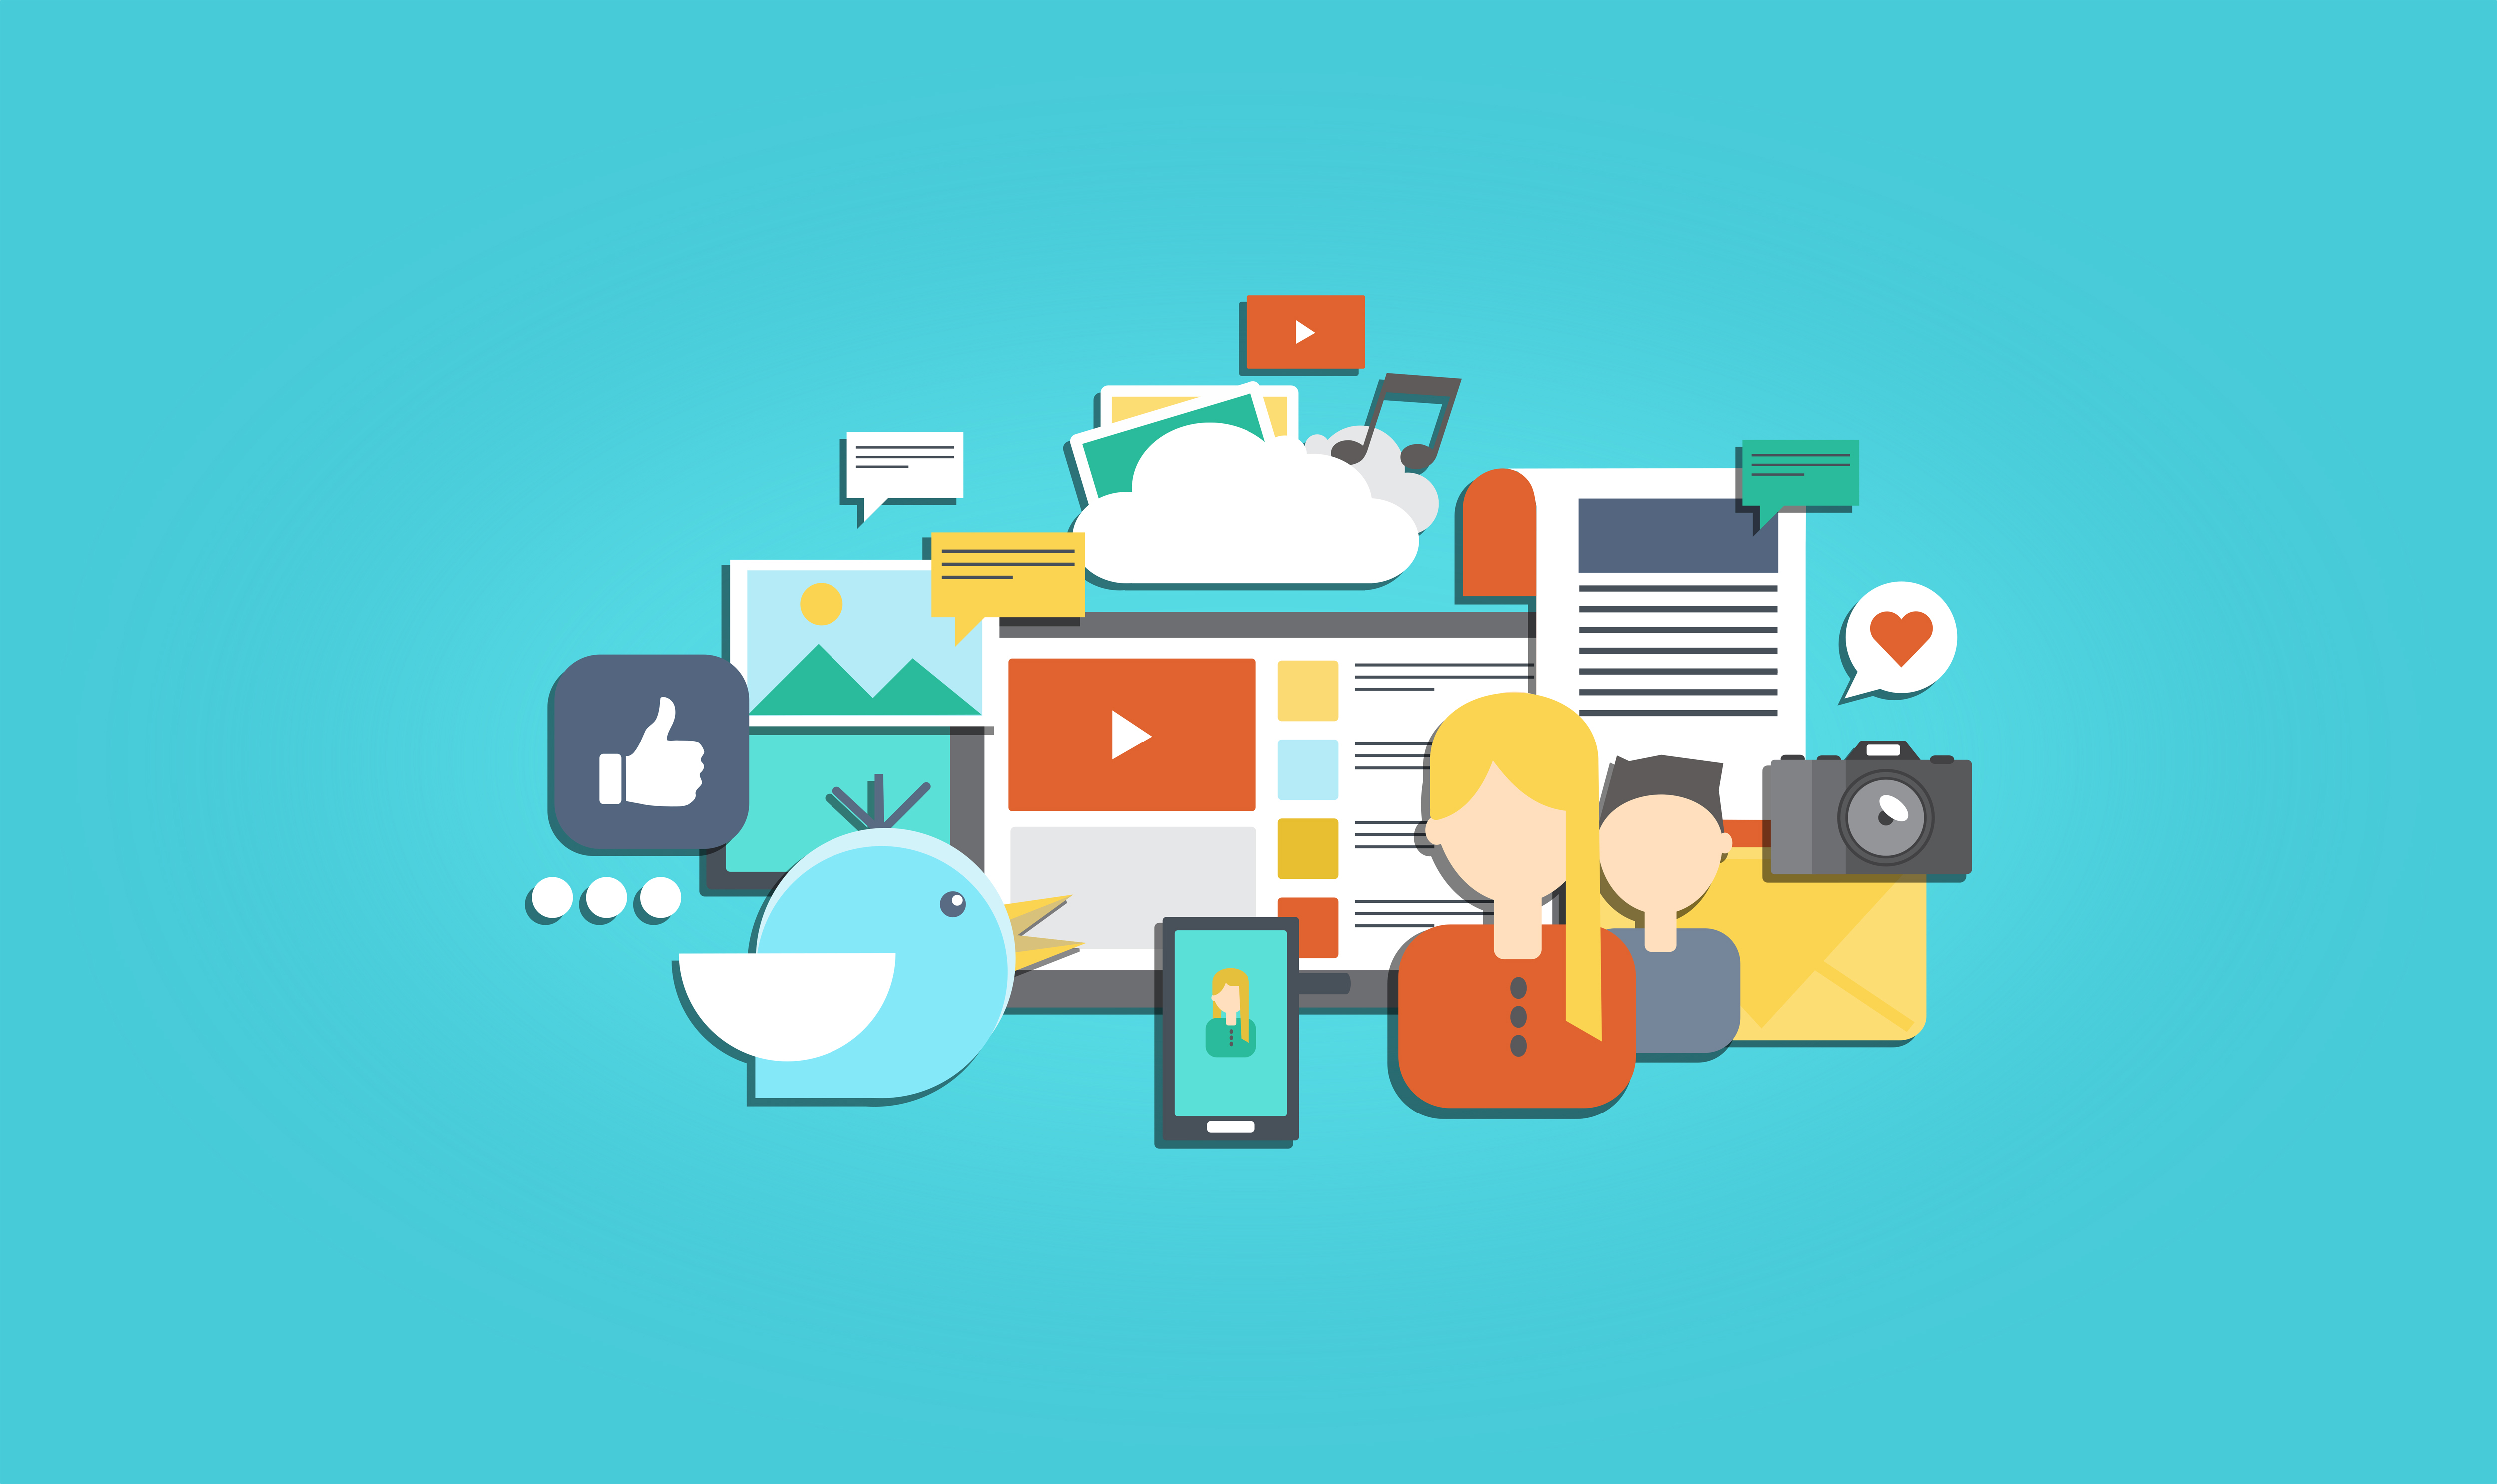 Social Media and Social Marketing - Illustration